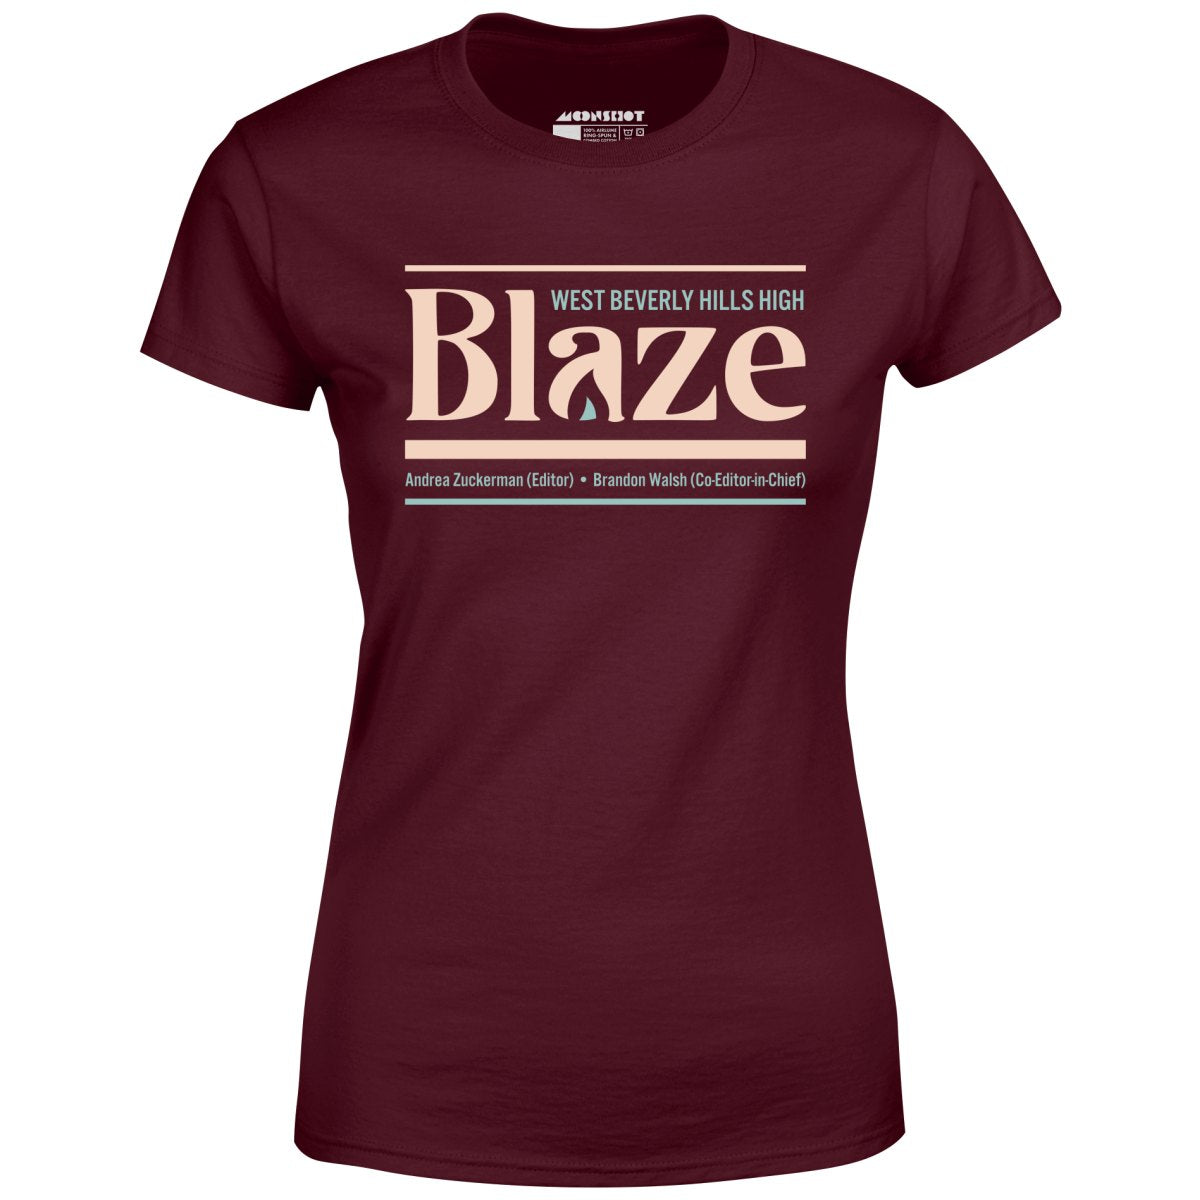 West Beverly Hills High Blaze Newspaper 90210 - Women's T-Shirt